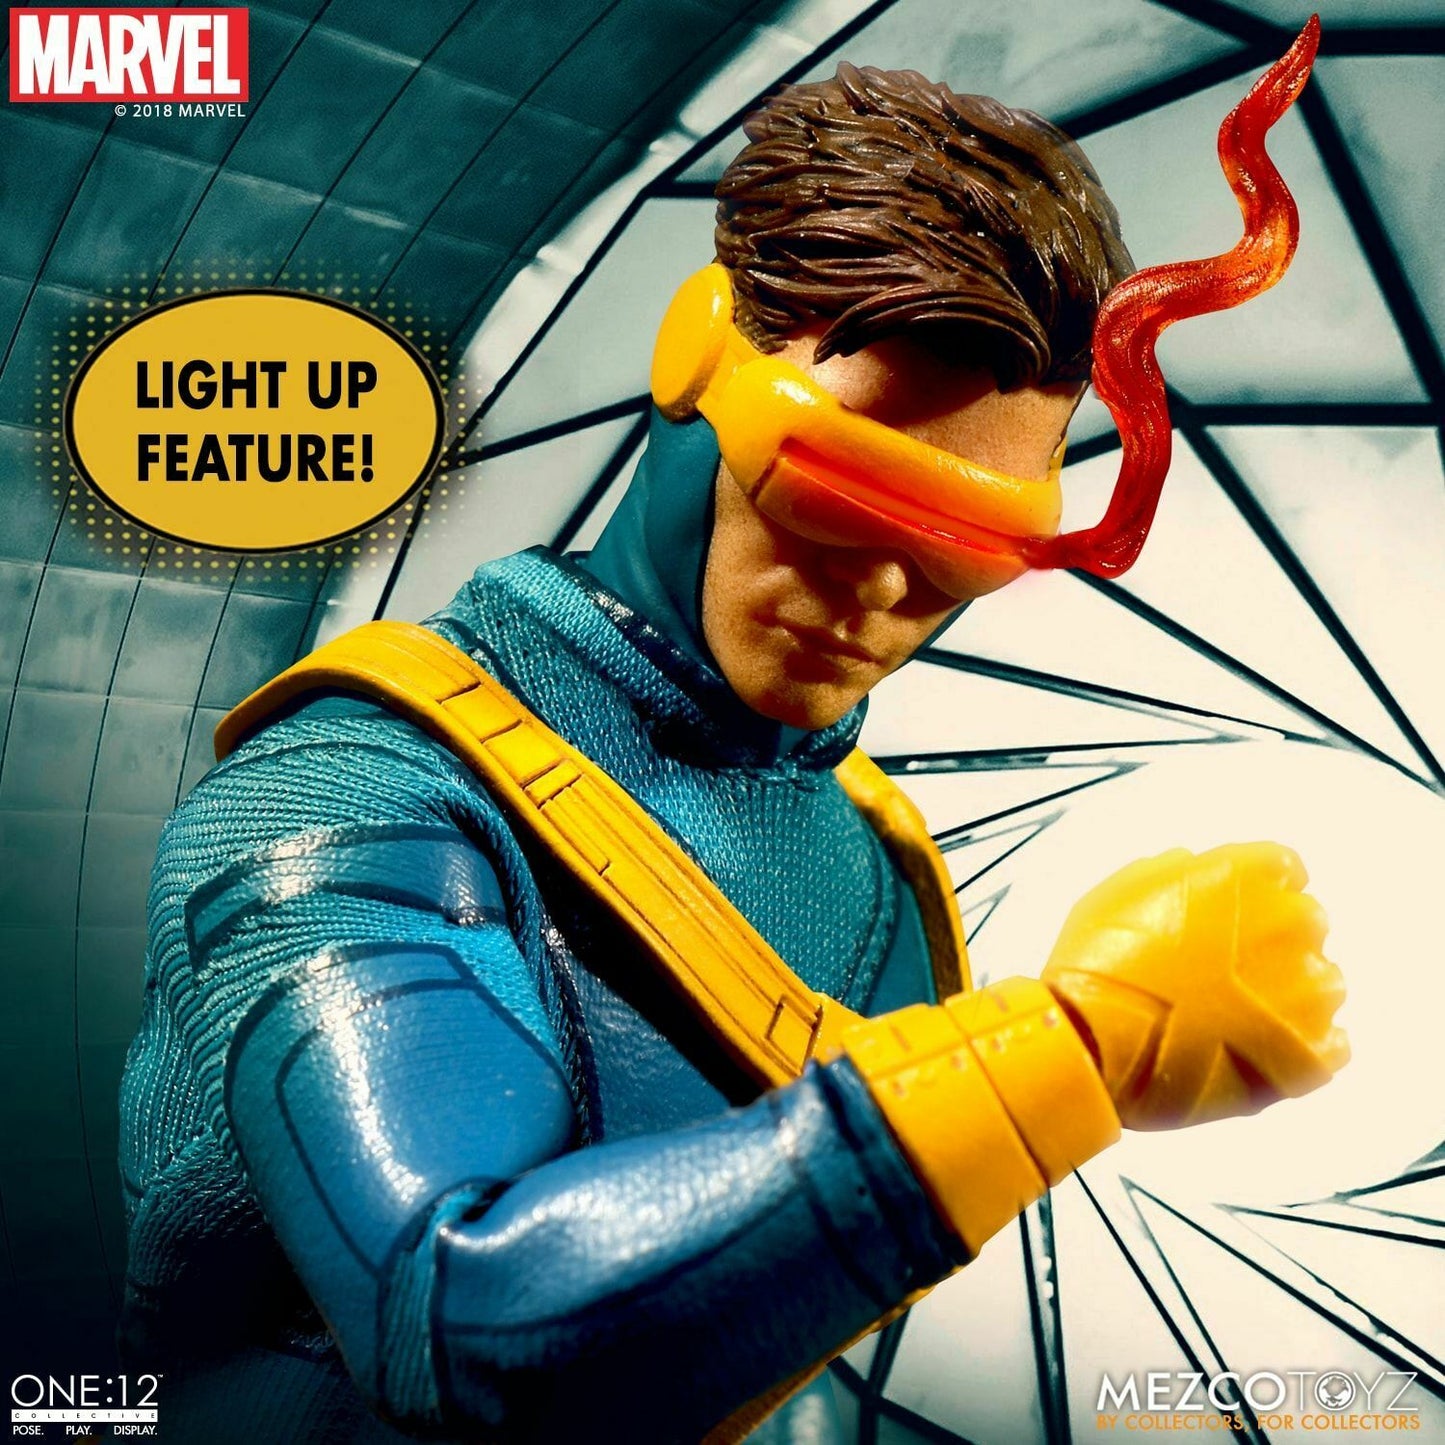 Pedido Figura Cyclops - Marvel - One:12 Collective marca Mezco Toyz 76922 escala pequeña 1/12